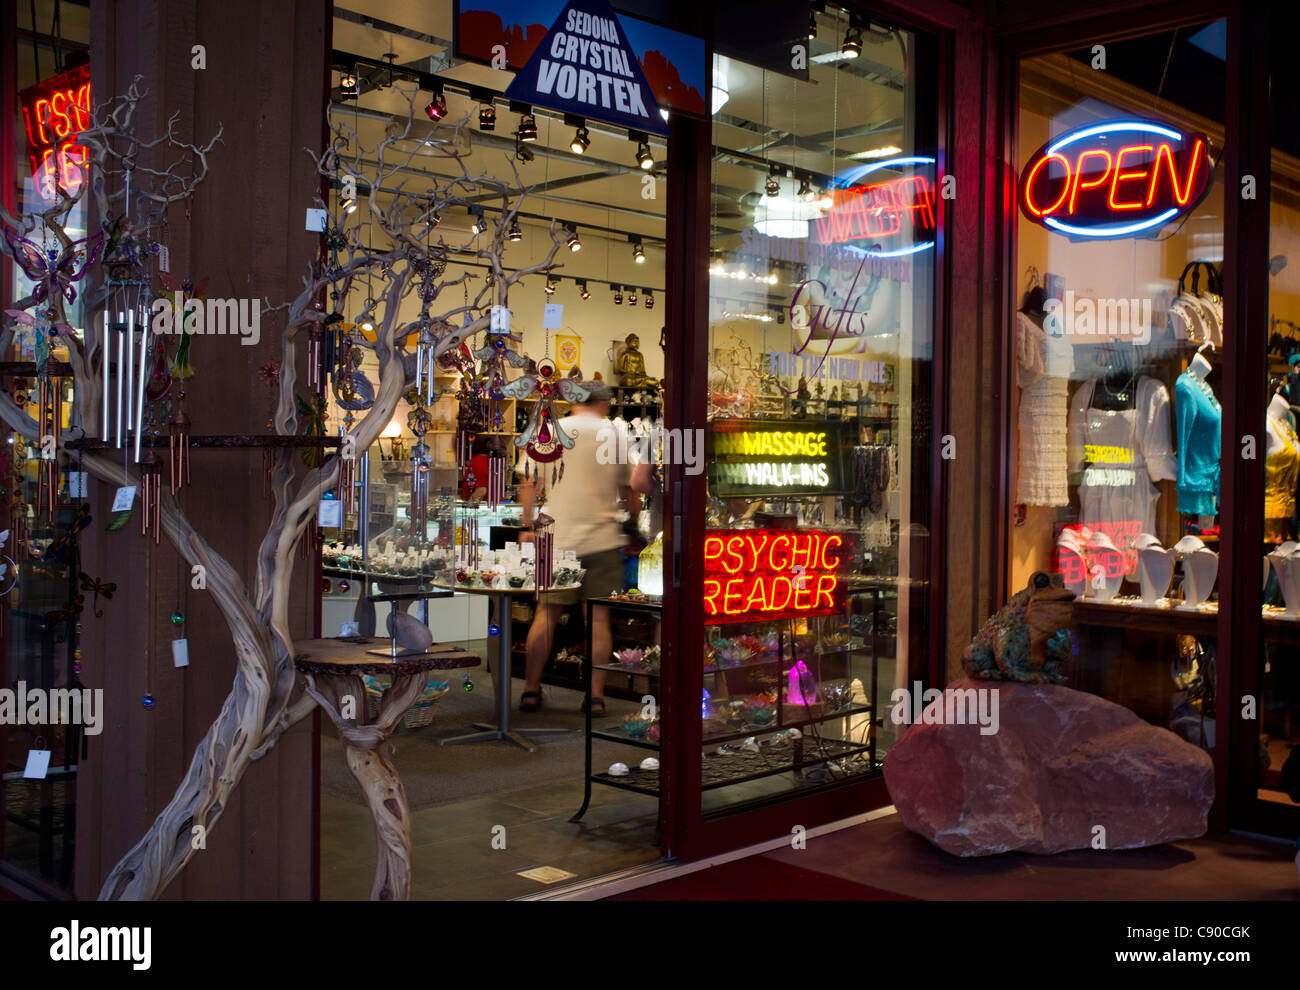 Sedona, Arizona, Crystal Vortex tienda escaparate abierto con signo y un lector psíquico Foto de stock